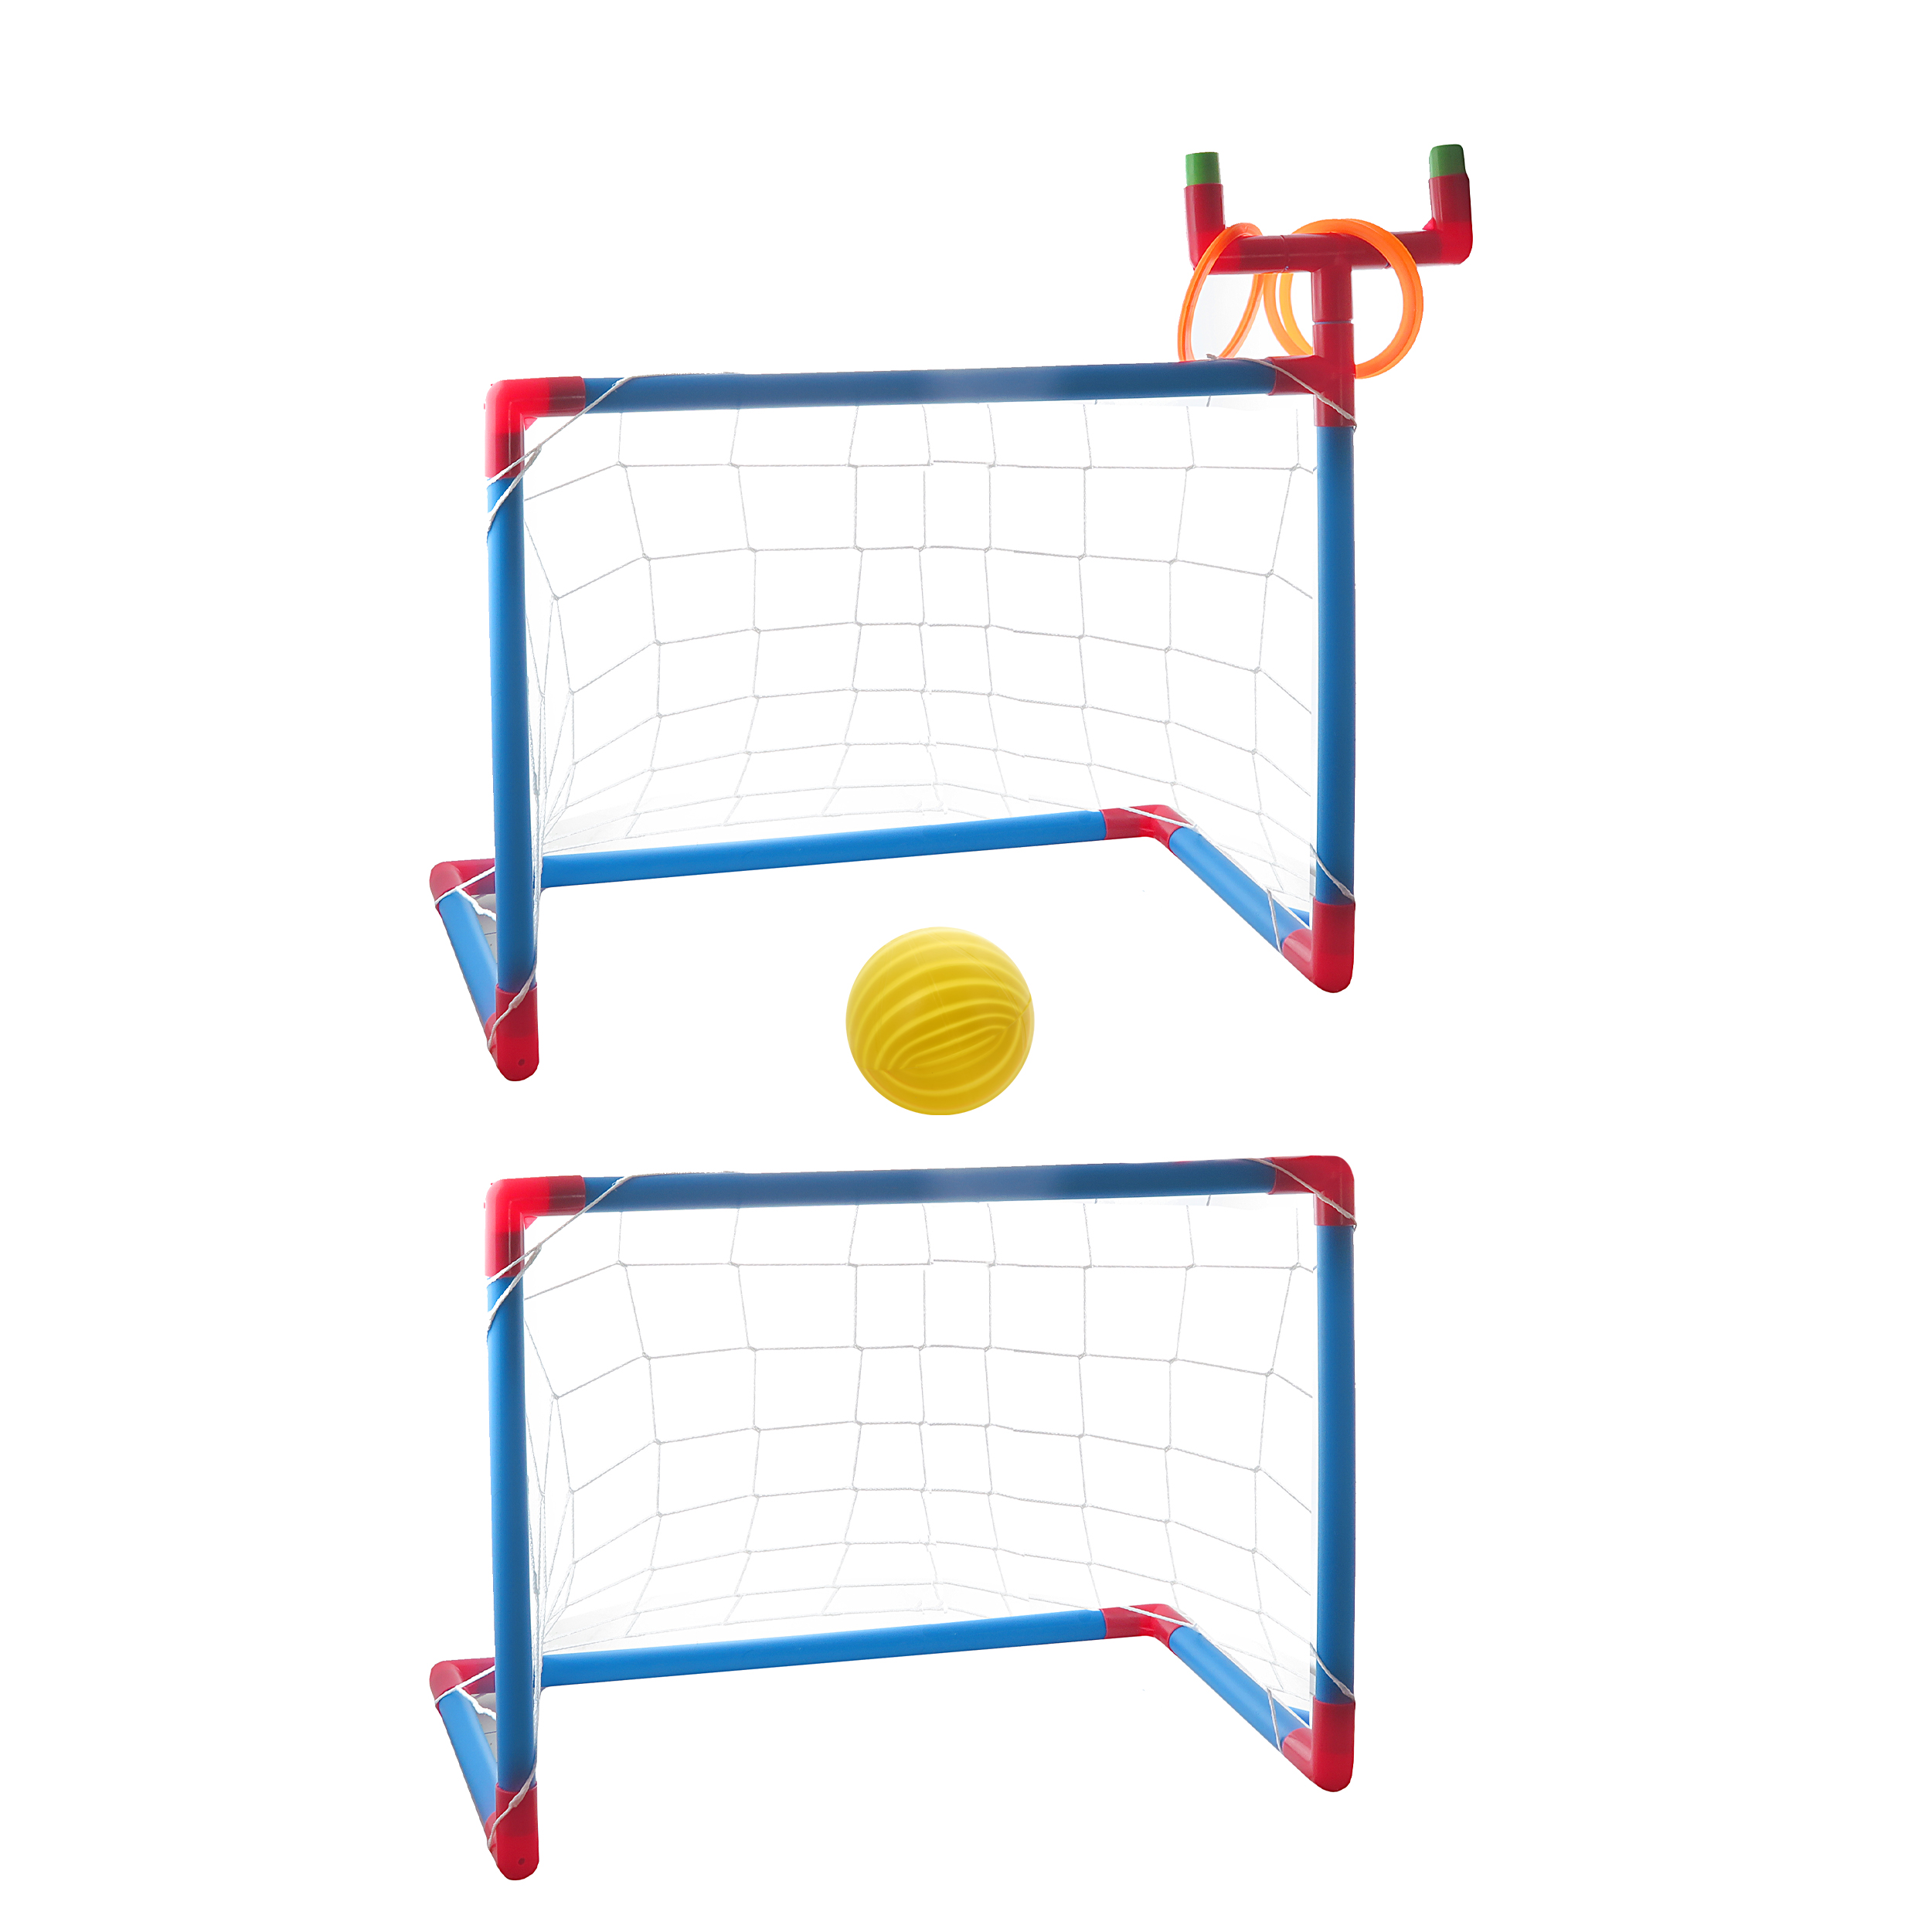 دروازه بازی فوتبال مدل فایو استار بسته دو عددی به همراه توپ